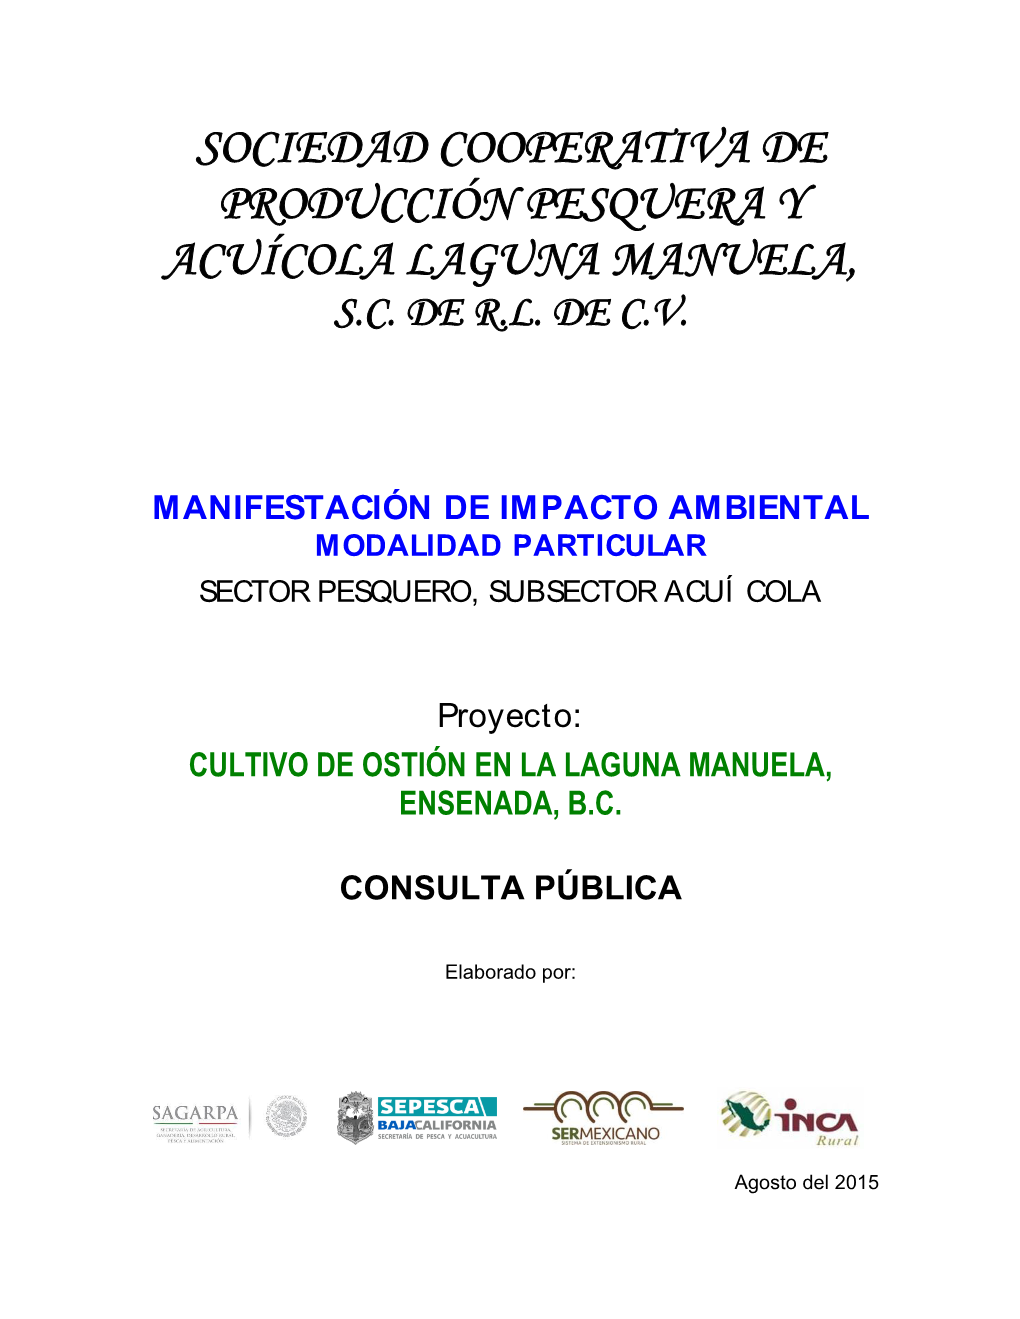 Sociedad Cooperativa De Producción Pesquera Y Acuícola Laguna Manuela, S.C